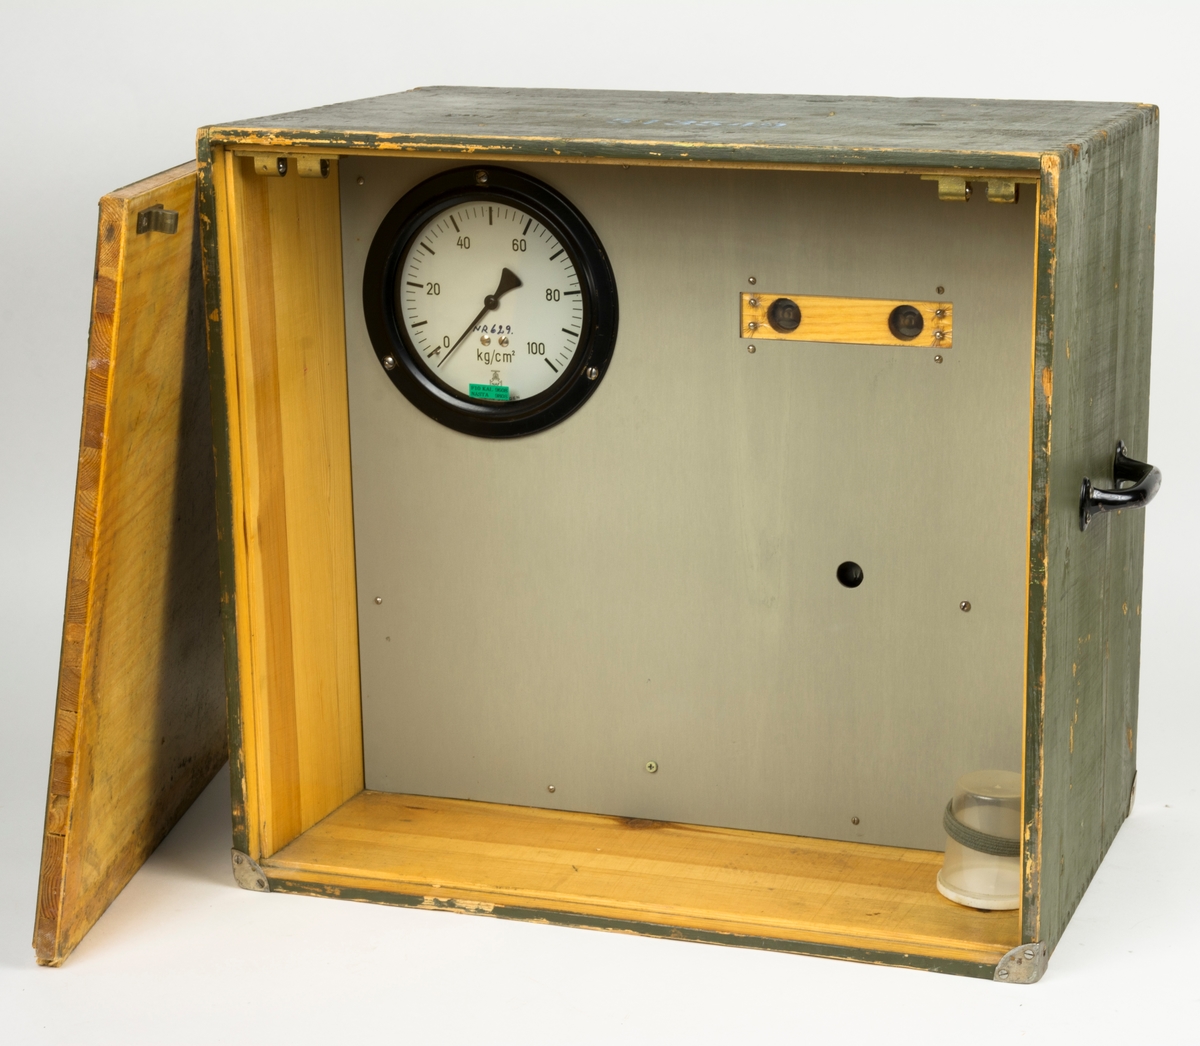 Tryckprovningsaggregat MT, förvaras i trälåda. Mätinstrumentet har mätskala från 0-100 kg/cm2. Används till startsystem fpl 35A-F.